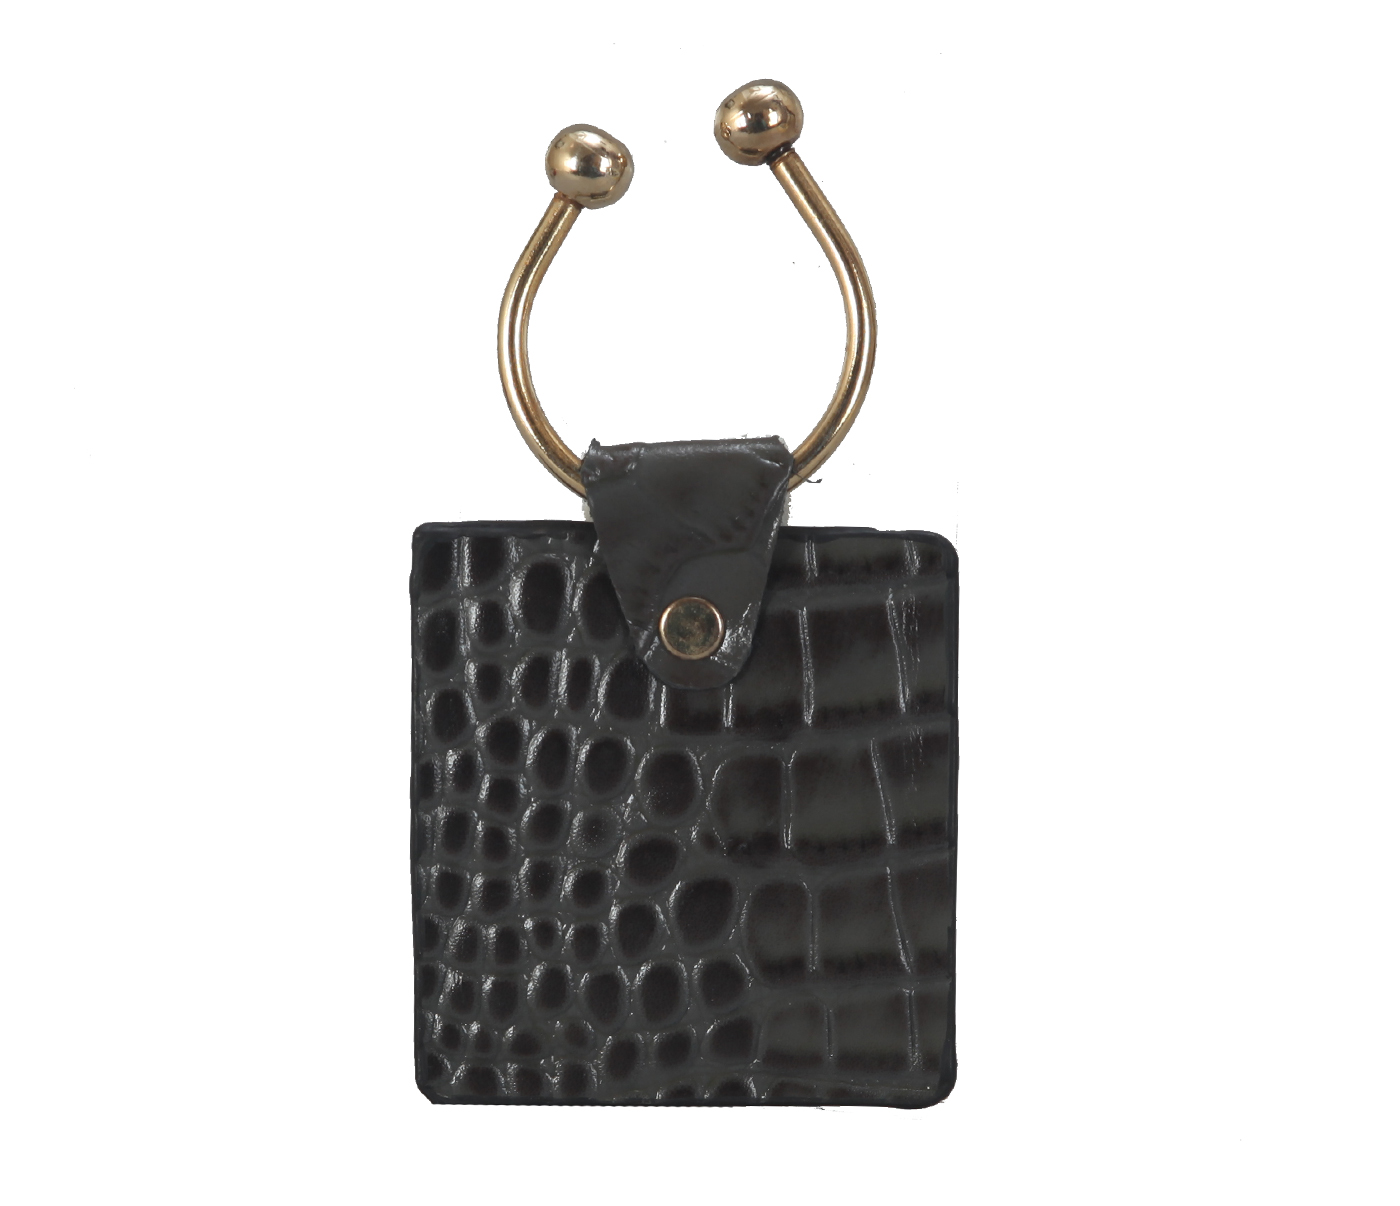 W269--Key holder with knob screw key fitting in Genuine Leather - Grey